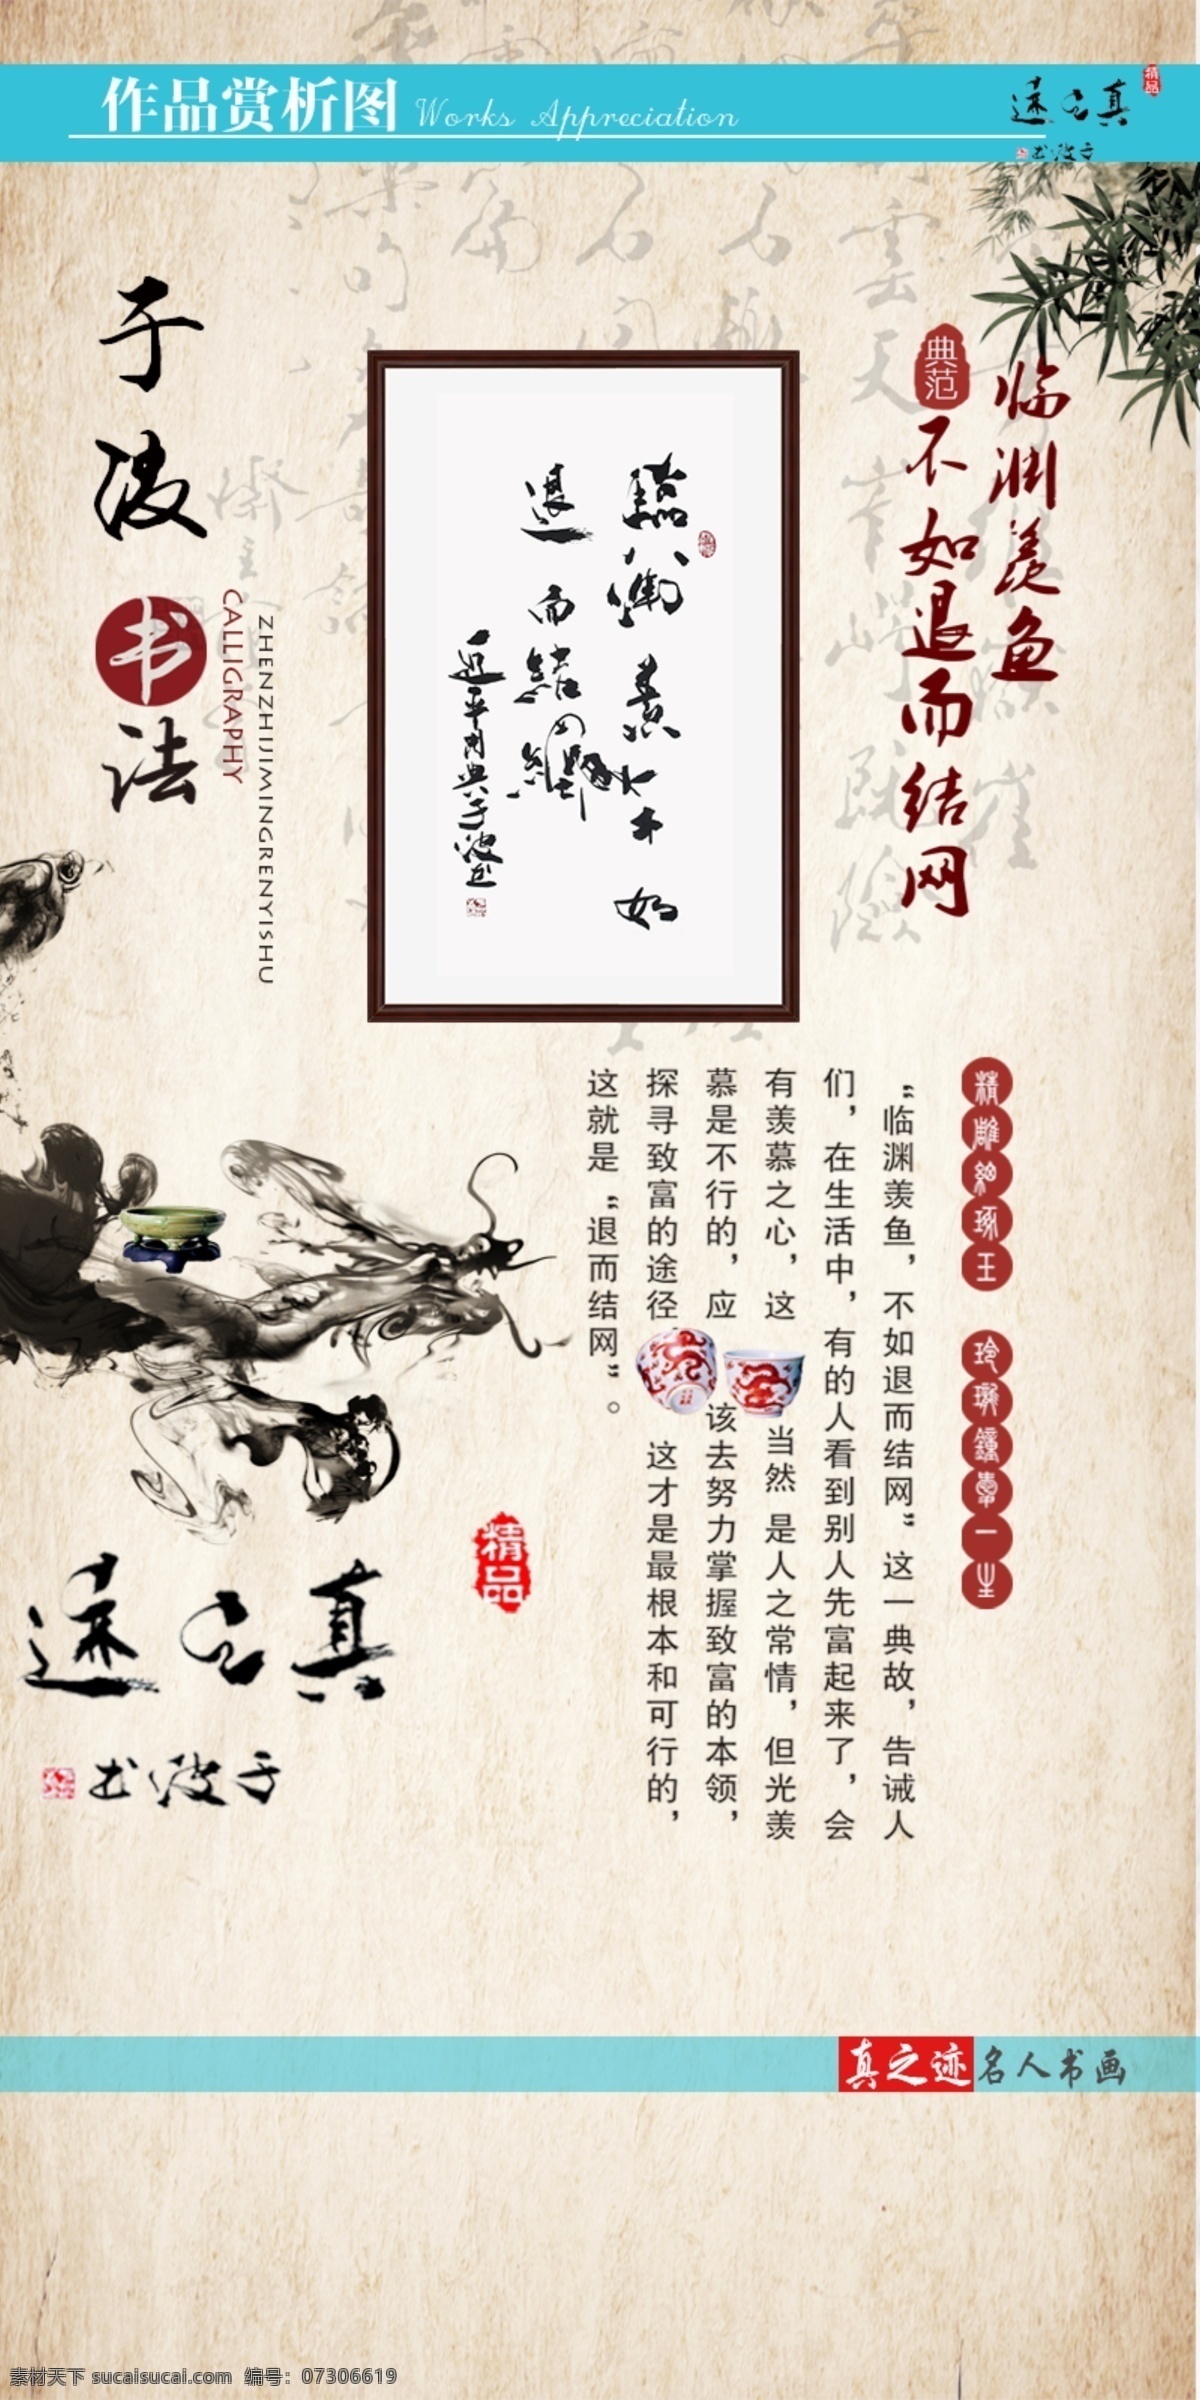 书画展示 中国风 书画 书房海报 中国元素 水墨画 名人字画 白色